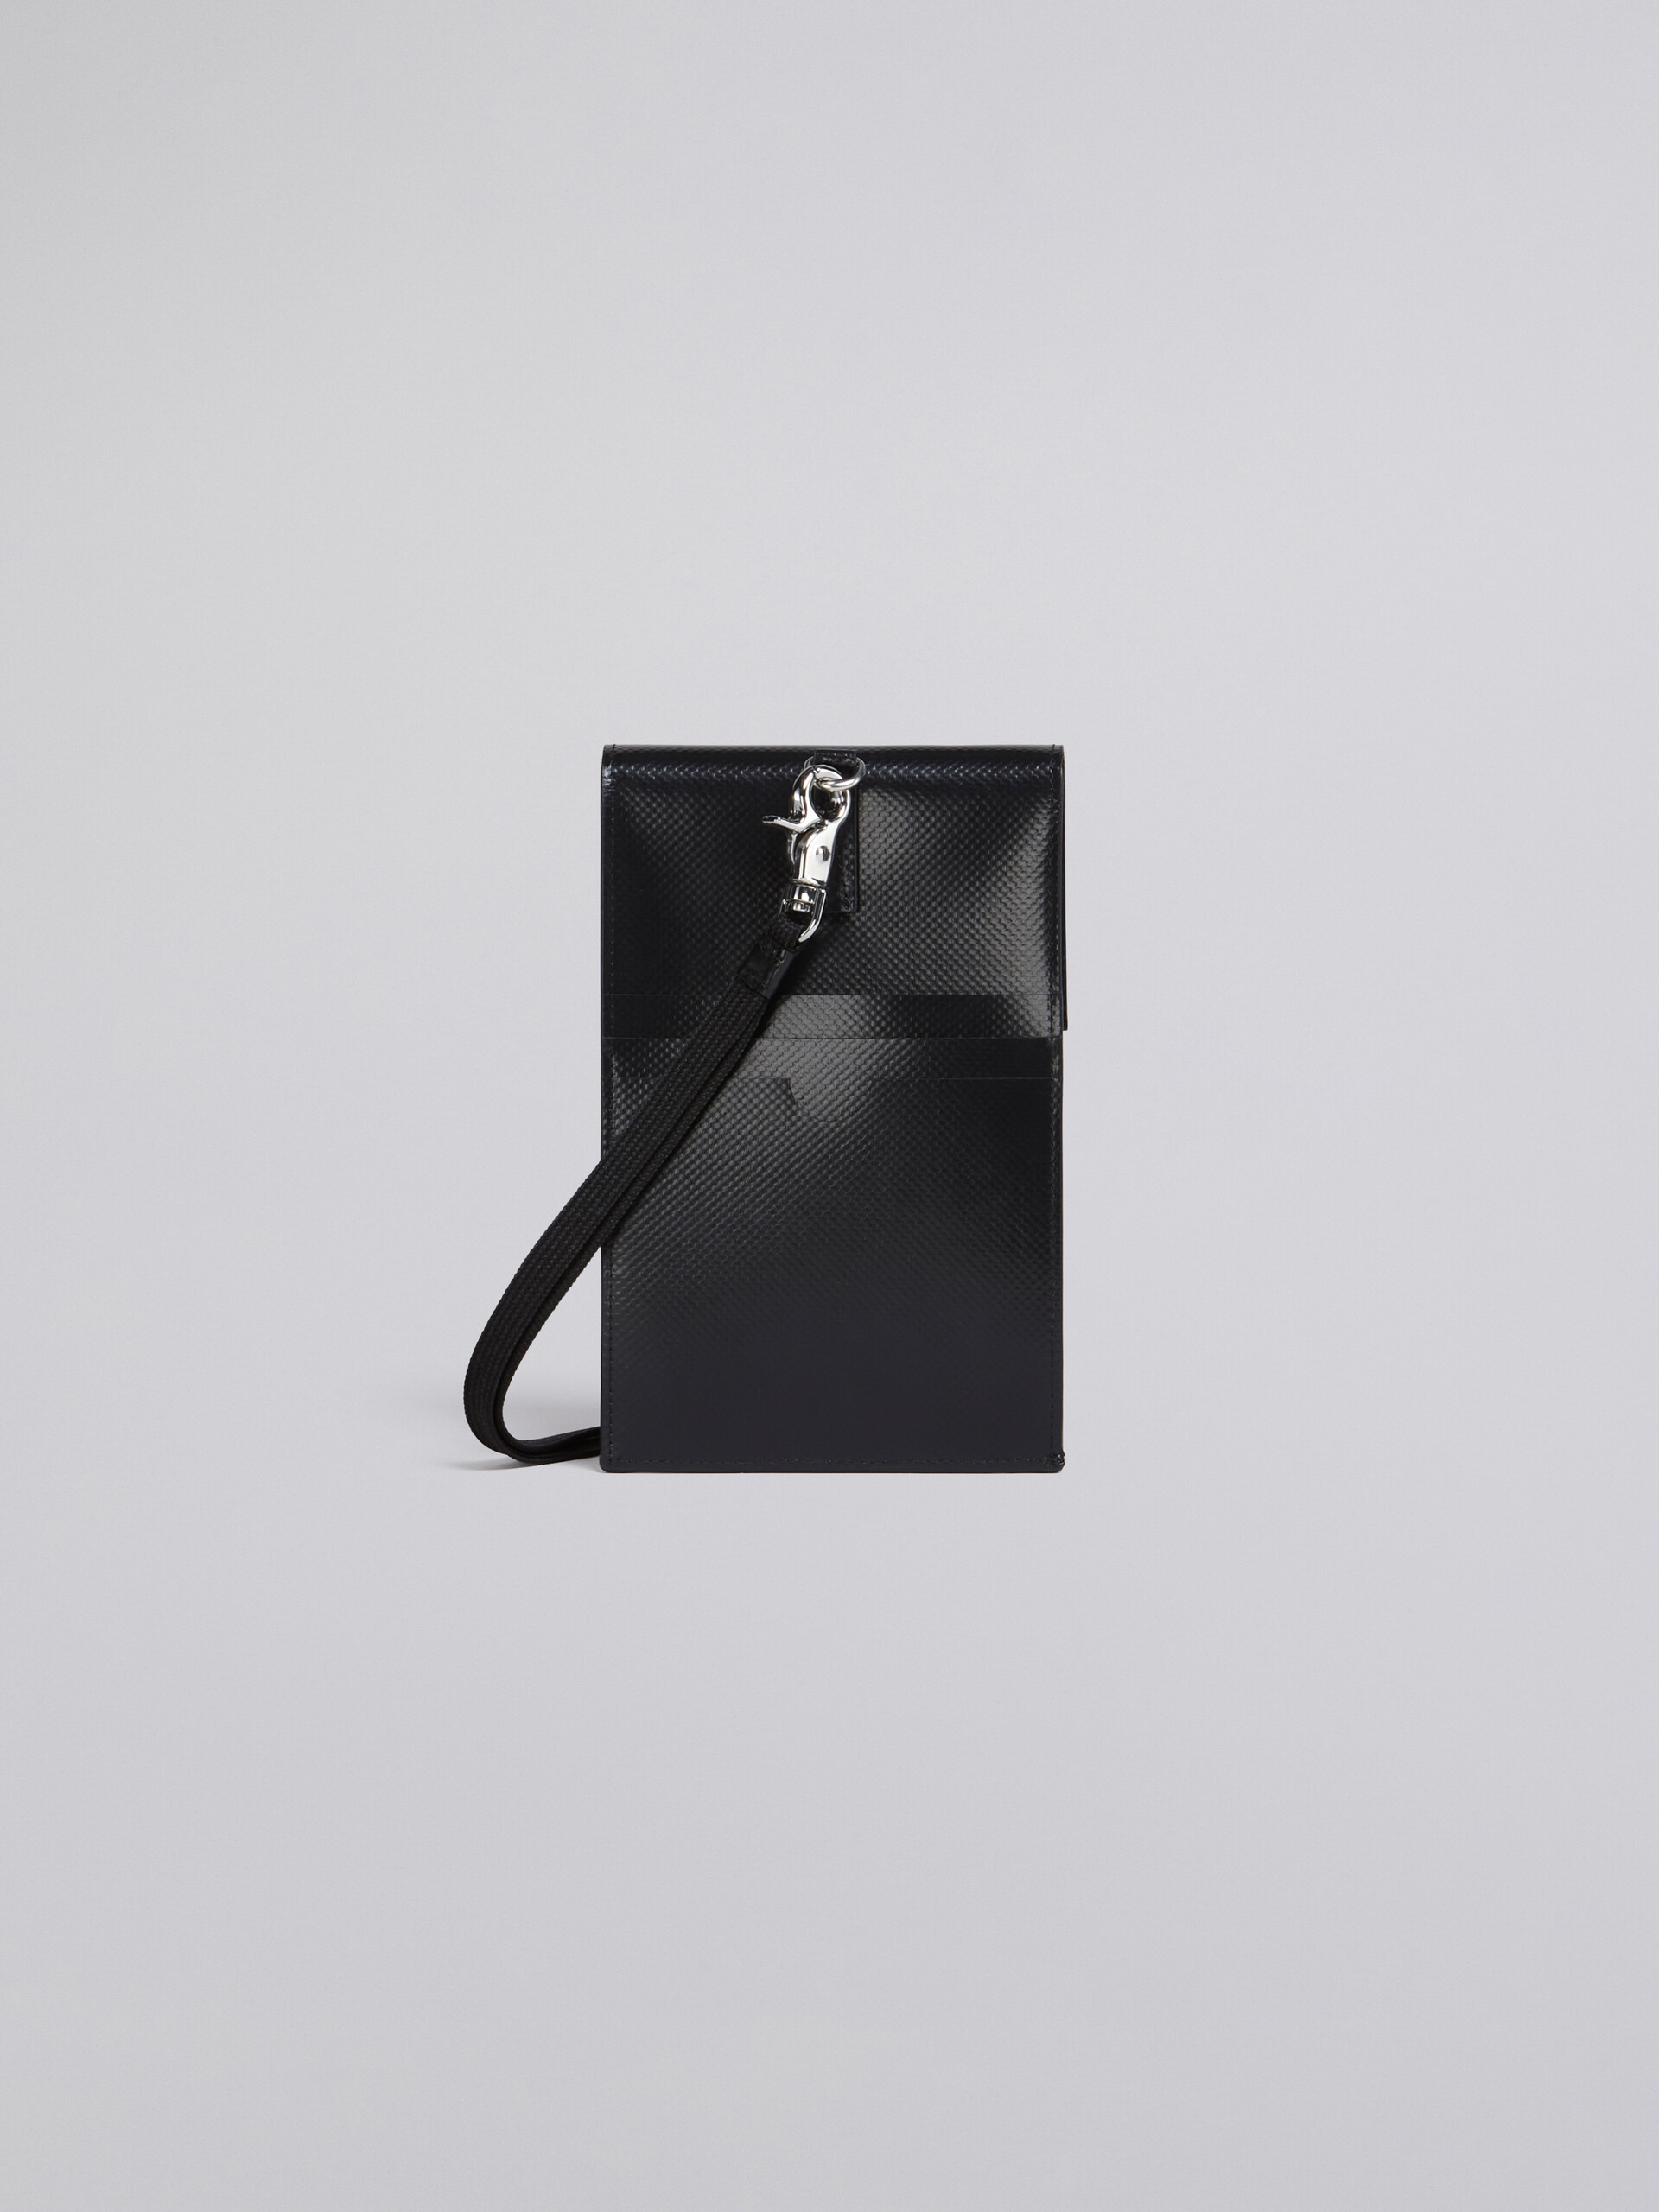 Smartphone-Hülle mit Euphoria-Print - Brieftaschen & Kleinlederwaren - Image 3